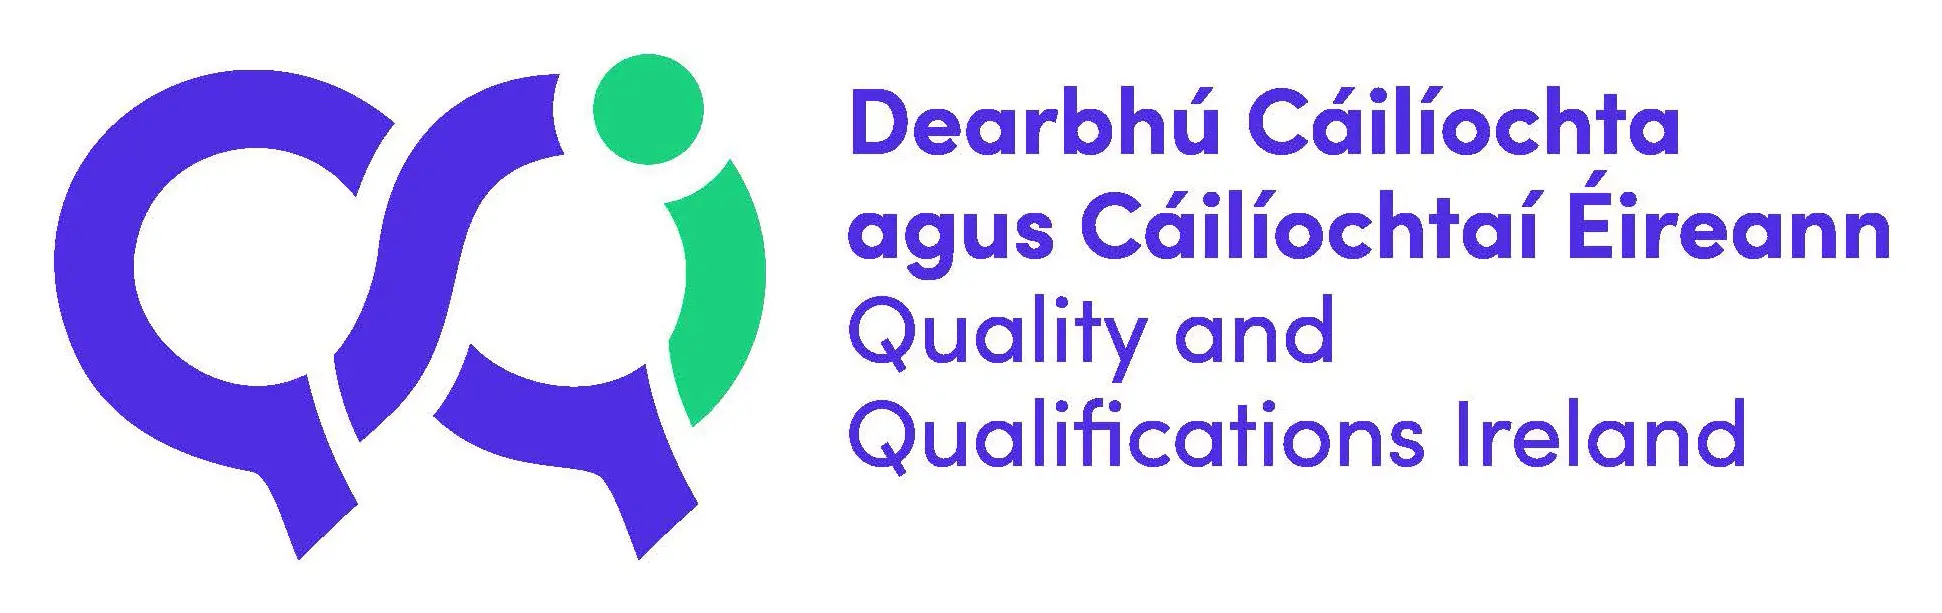 Quality and Qualifications Ireland - Dearbhú Cáilíochta agus Cáilíochtaí Éireann Logo